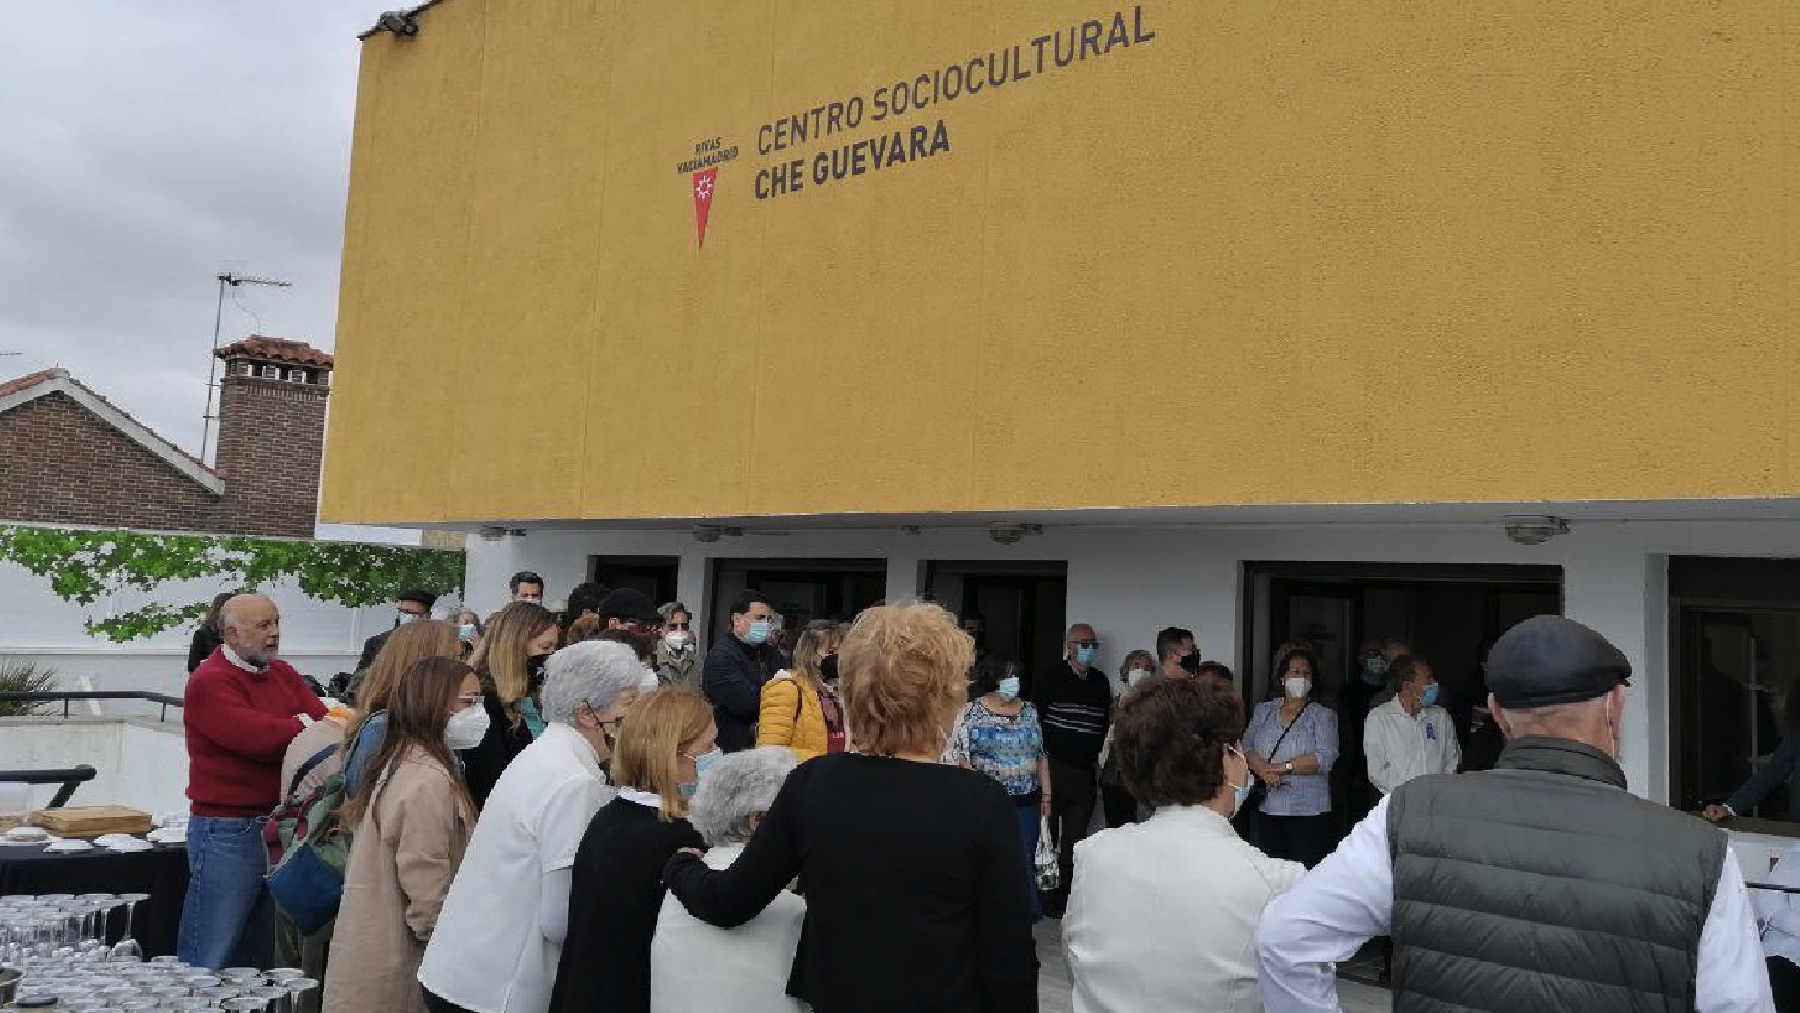 El alcalde de Rivas inaugura un centro cultural en honor al sanguinario, racista y homófobo Che Guevara